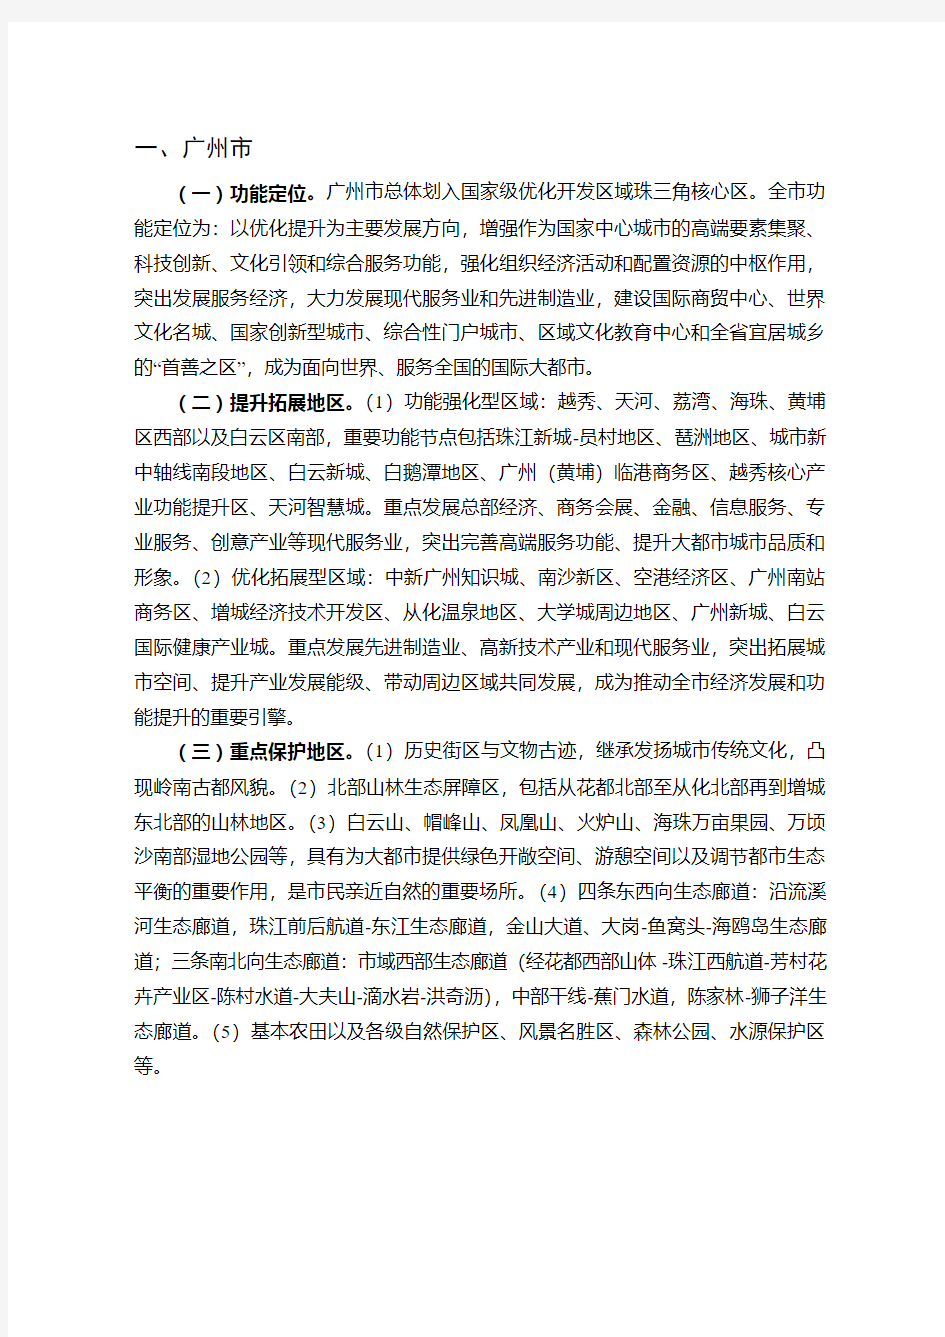 广东省主体功能区规划_附件3：地级以上市开发指引2012年09月14日